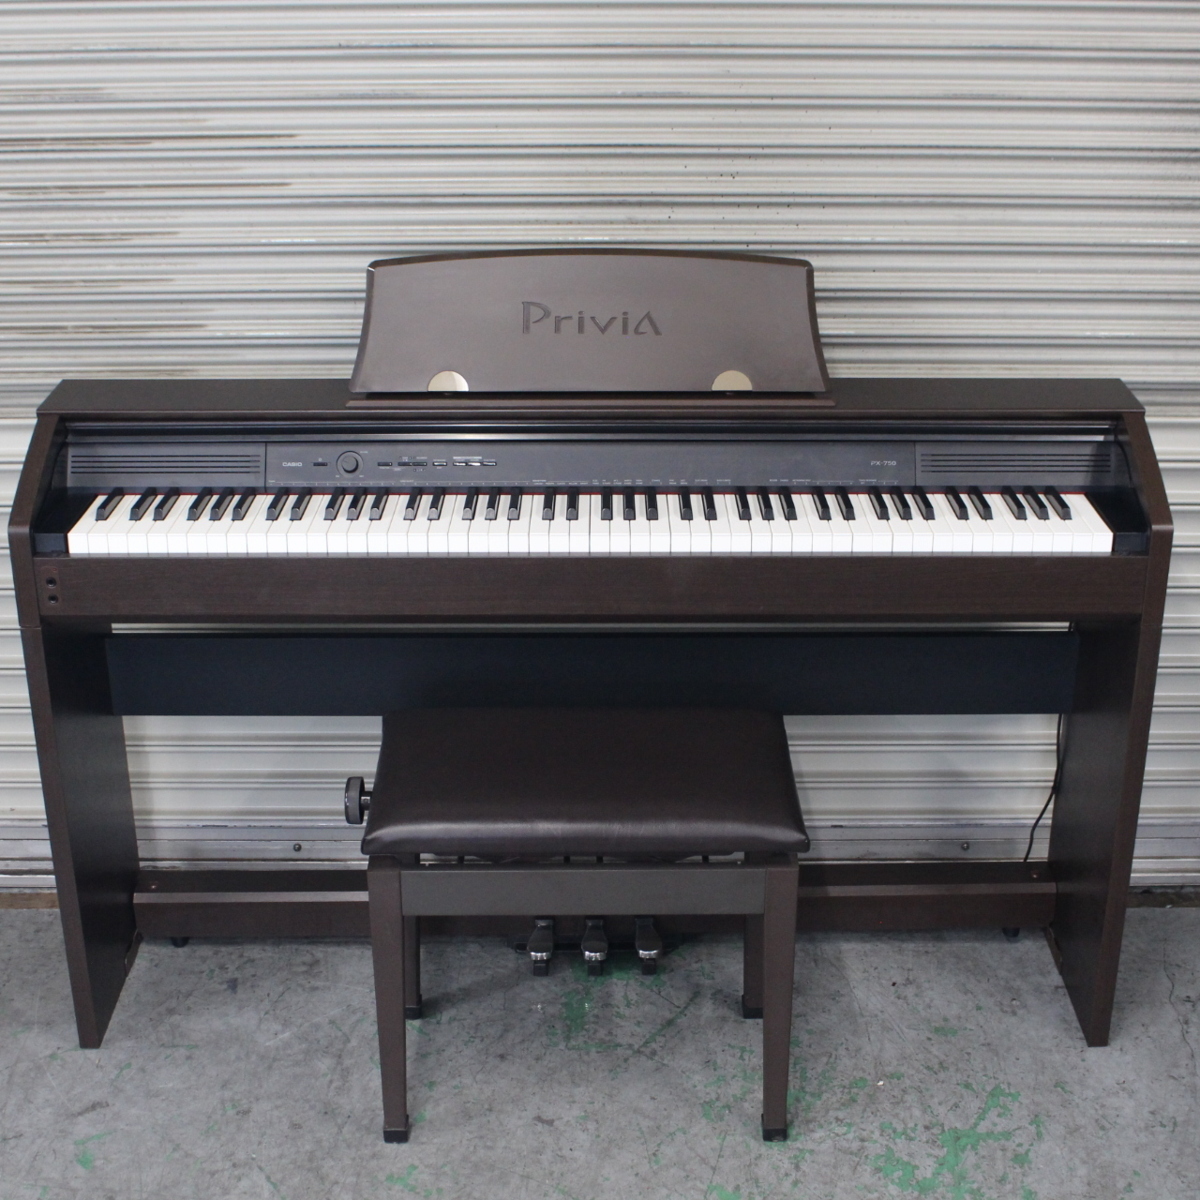 横浜市緑区にて カシオ 電子ピアノ PriviA PX-750BN 2013年製 を出張買取させて頂きました。